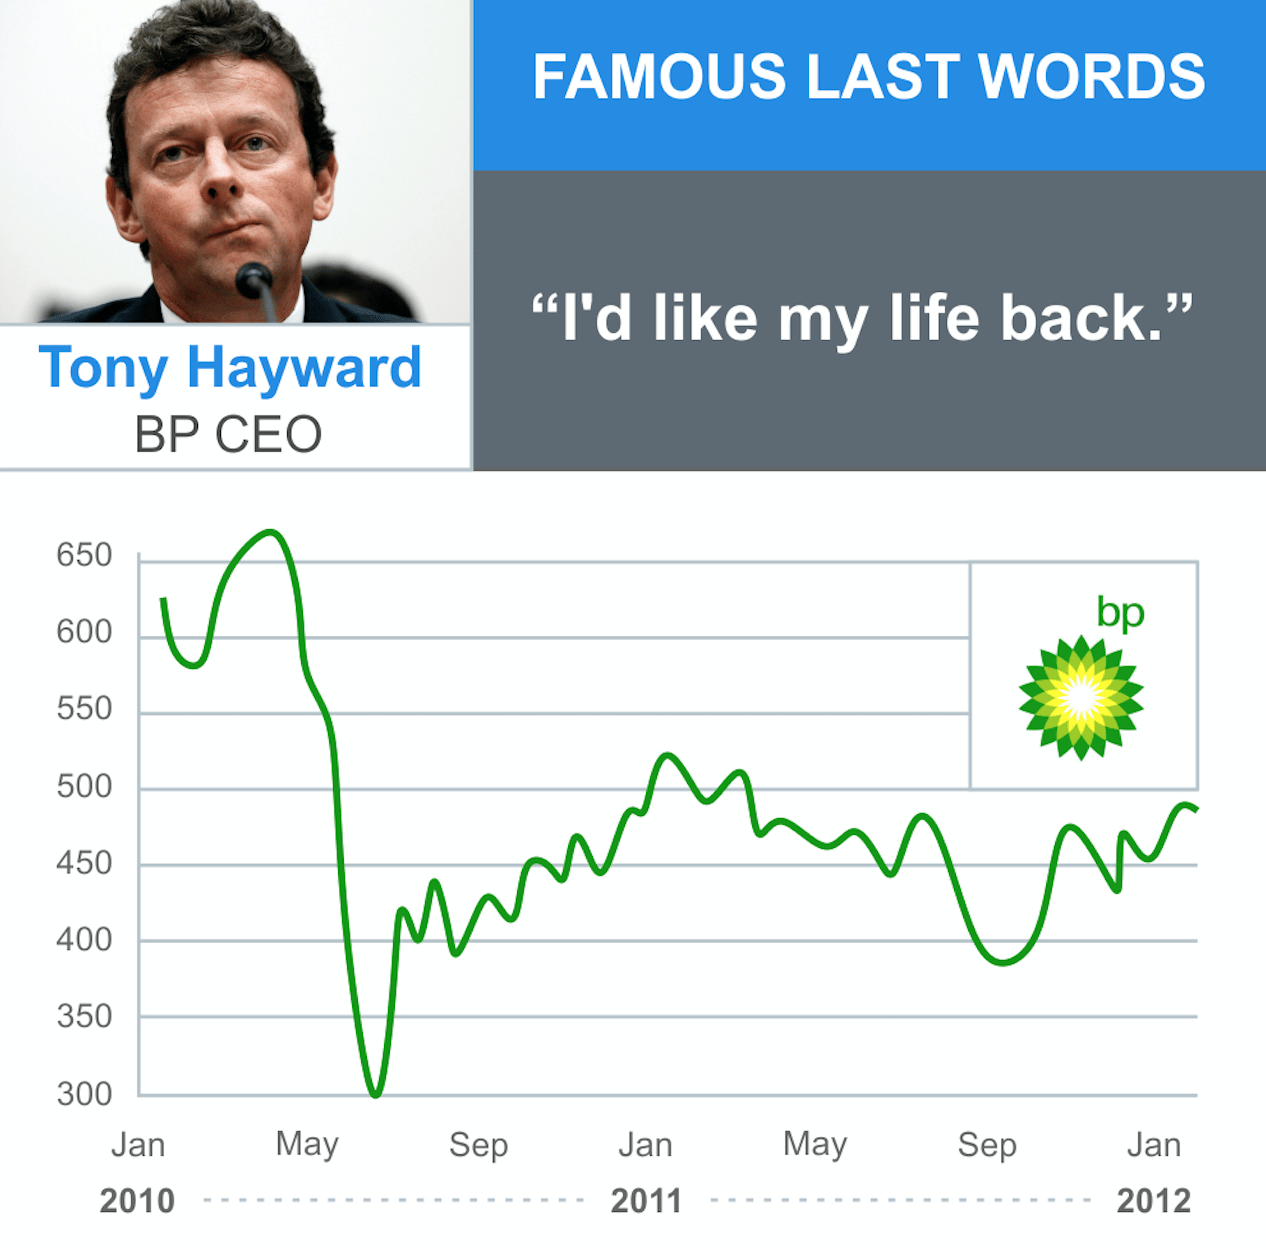 Tony Hayward's wrong words: "I'd like my life back"